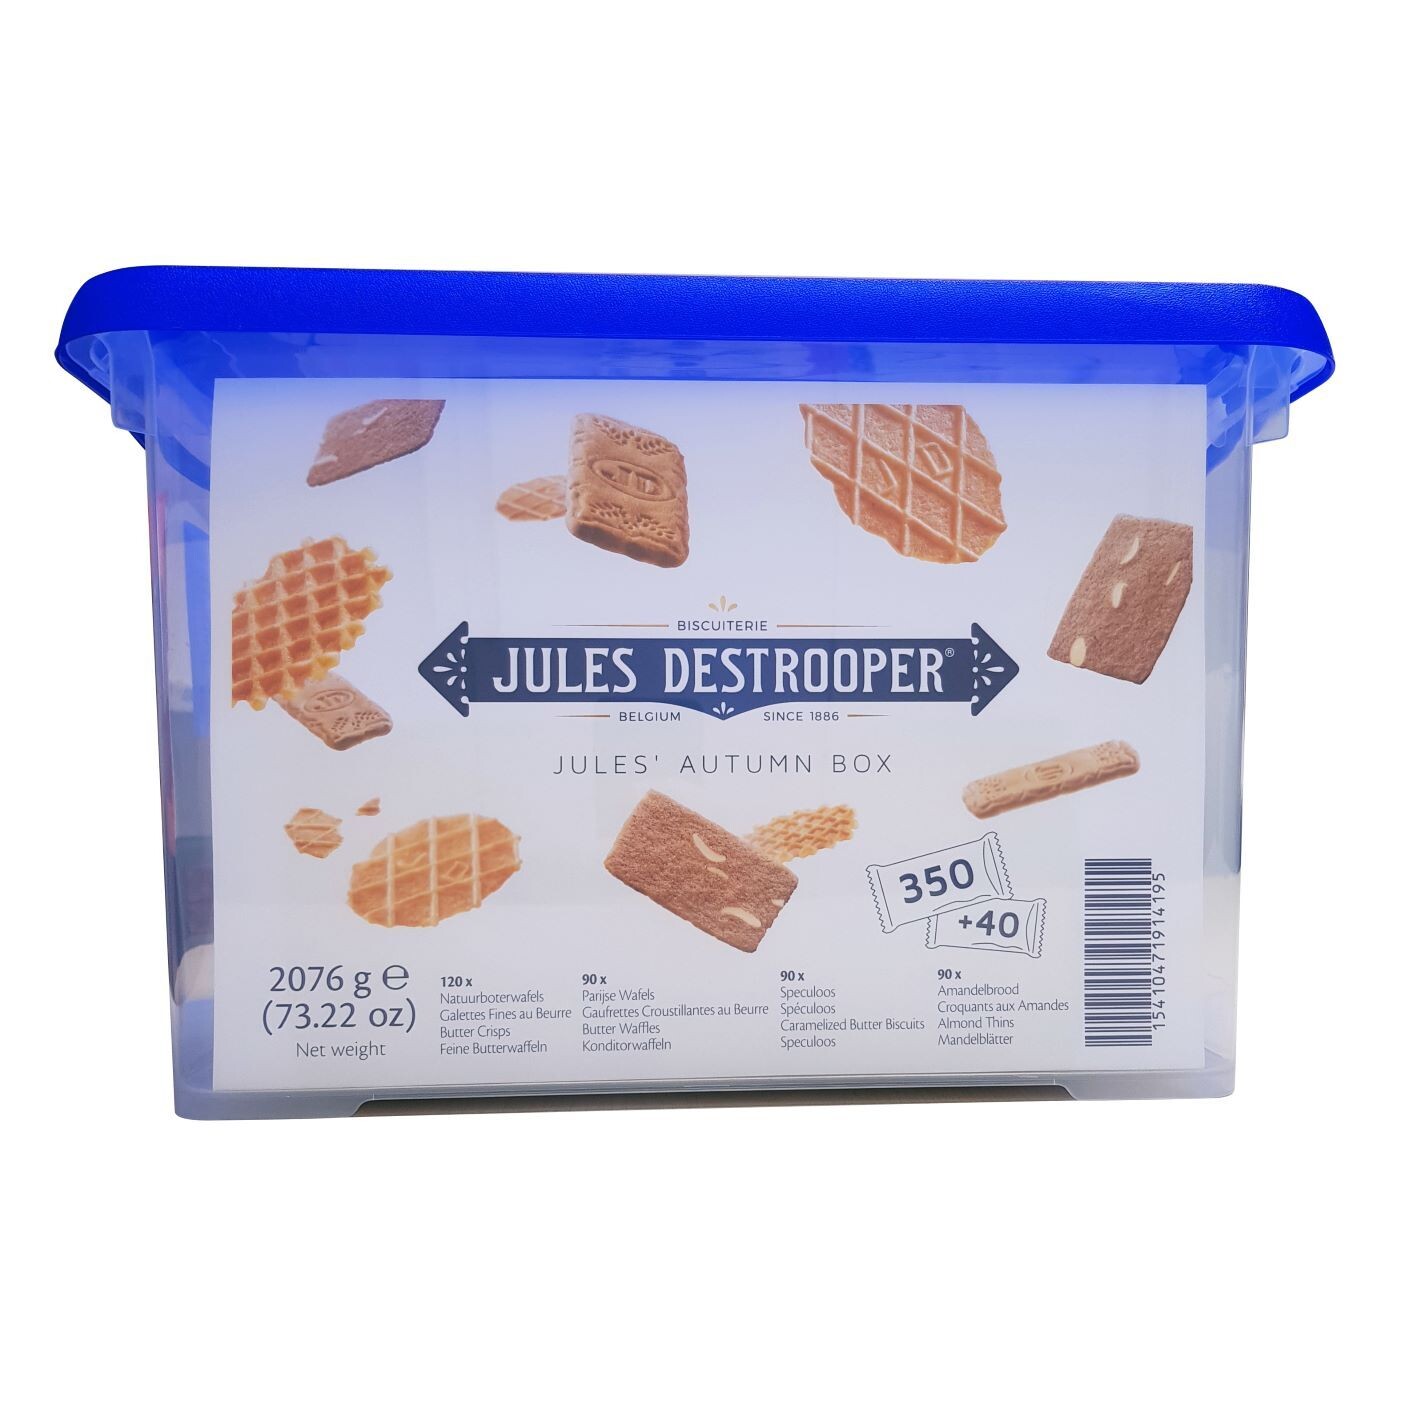 Jules Destrooper Autumn Box 350 + 40 gratis